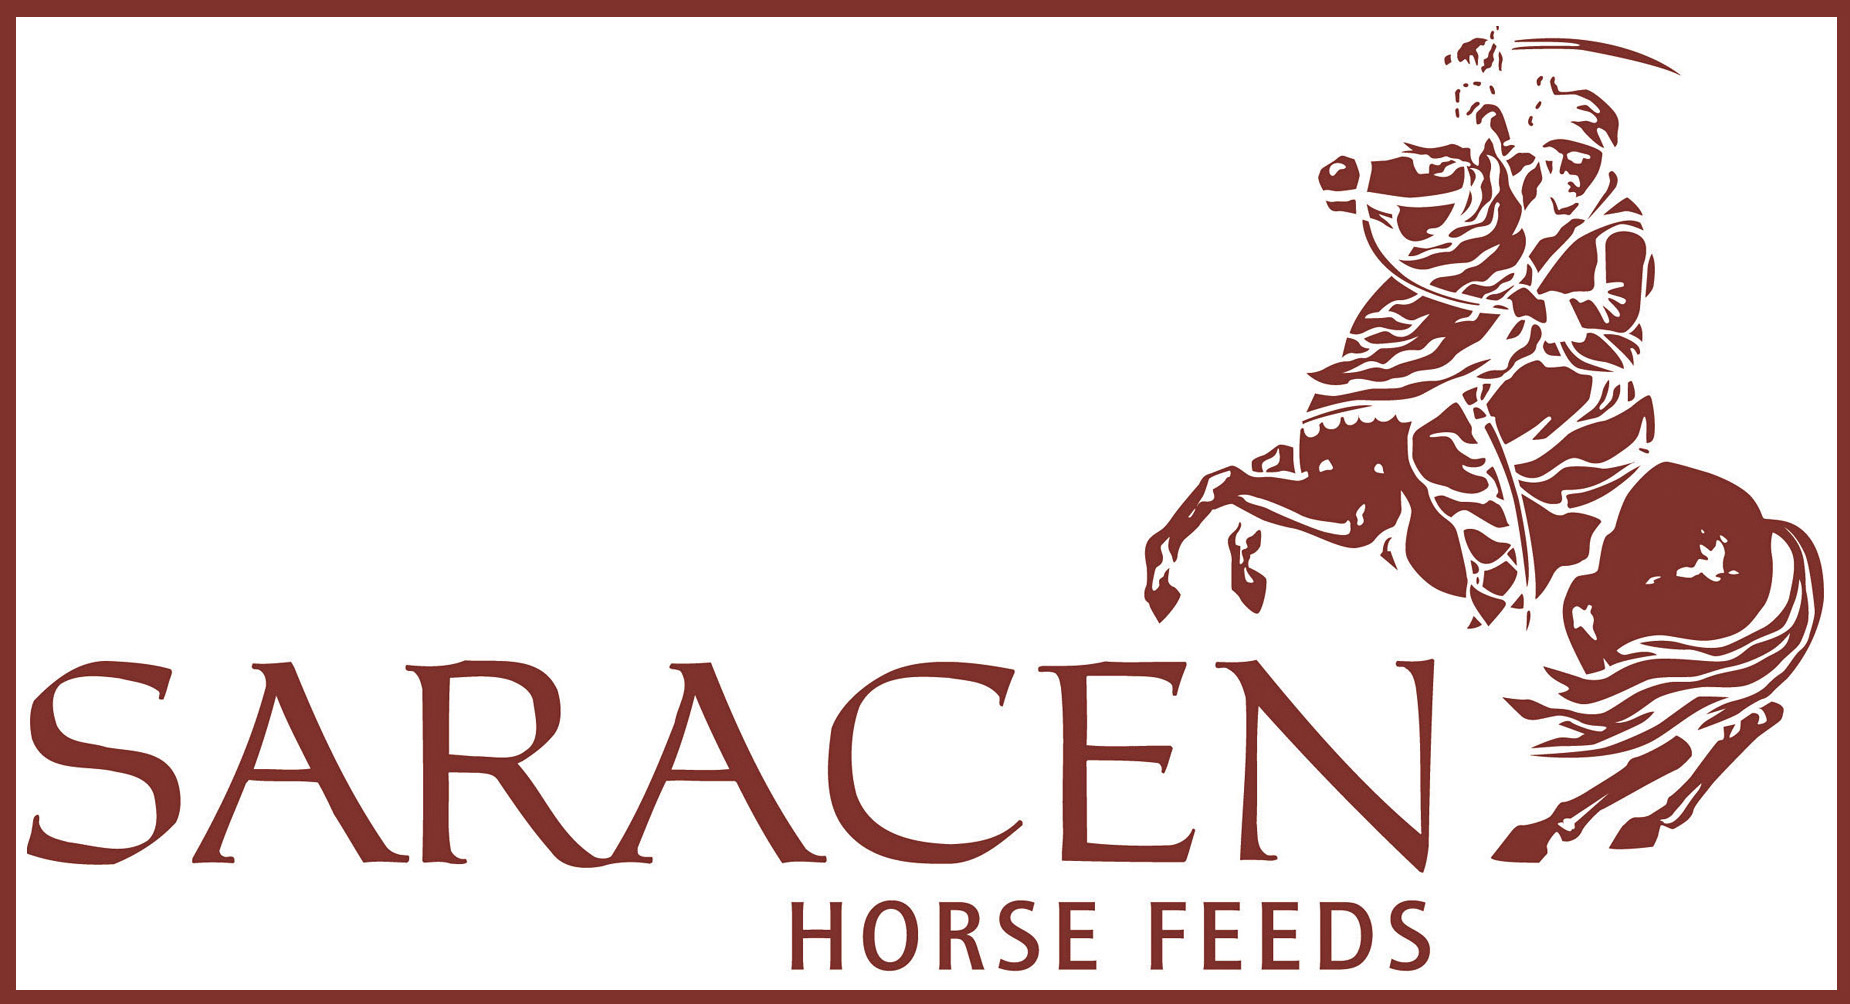 Saracen horse feeds